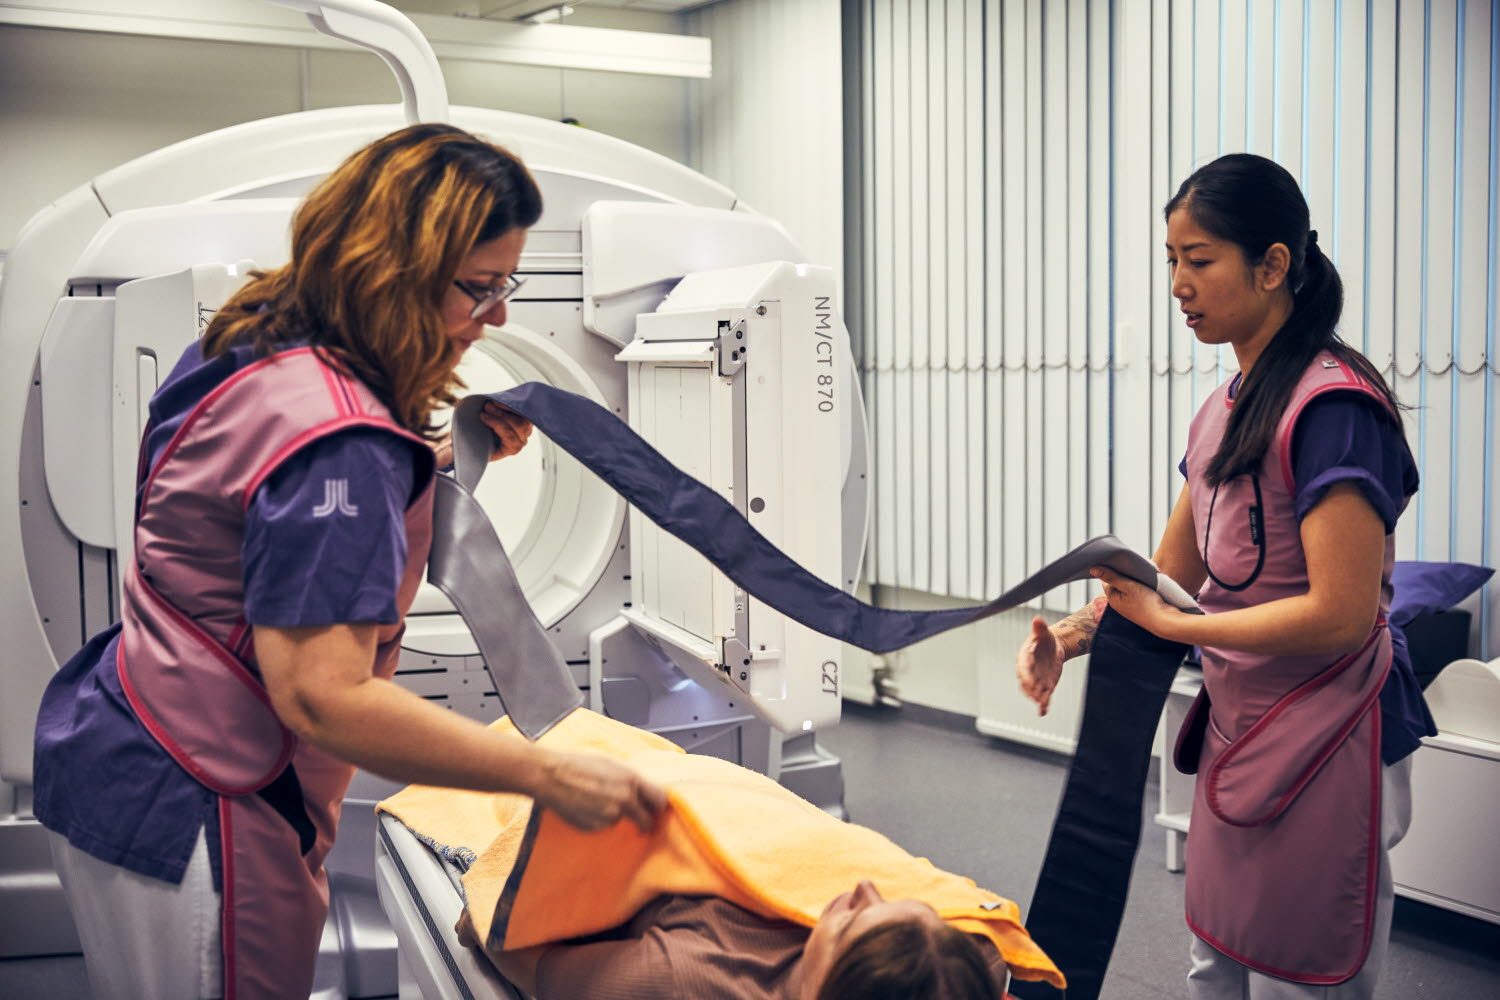 Två röntgensjuksköterskor som förbereder en patient. Danderyds sjukhus, röntgen, nuklearmedicin. Oktober 2021.